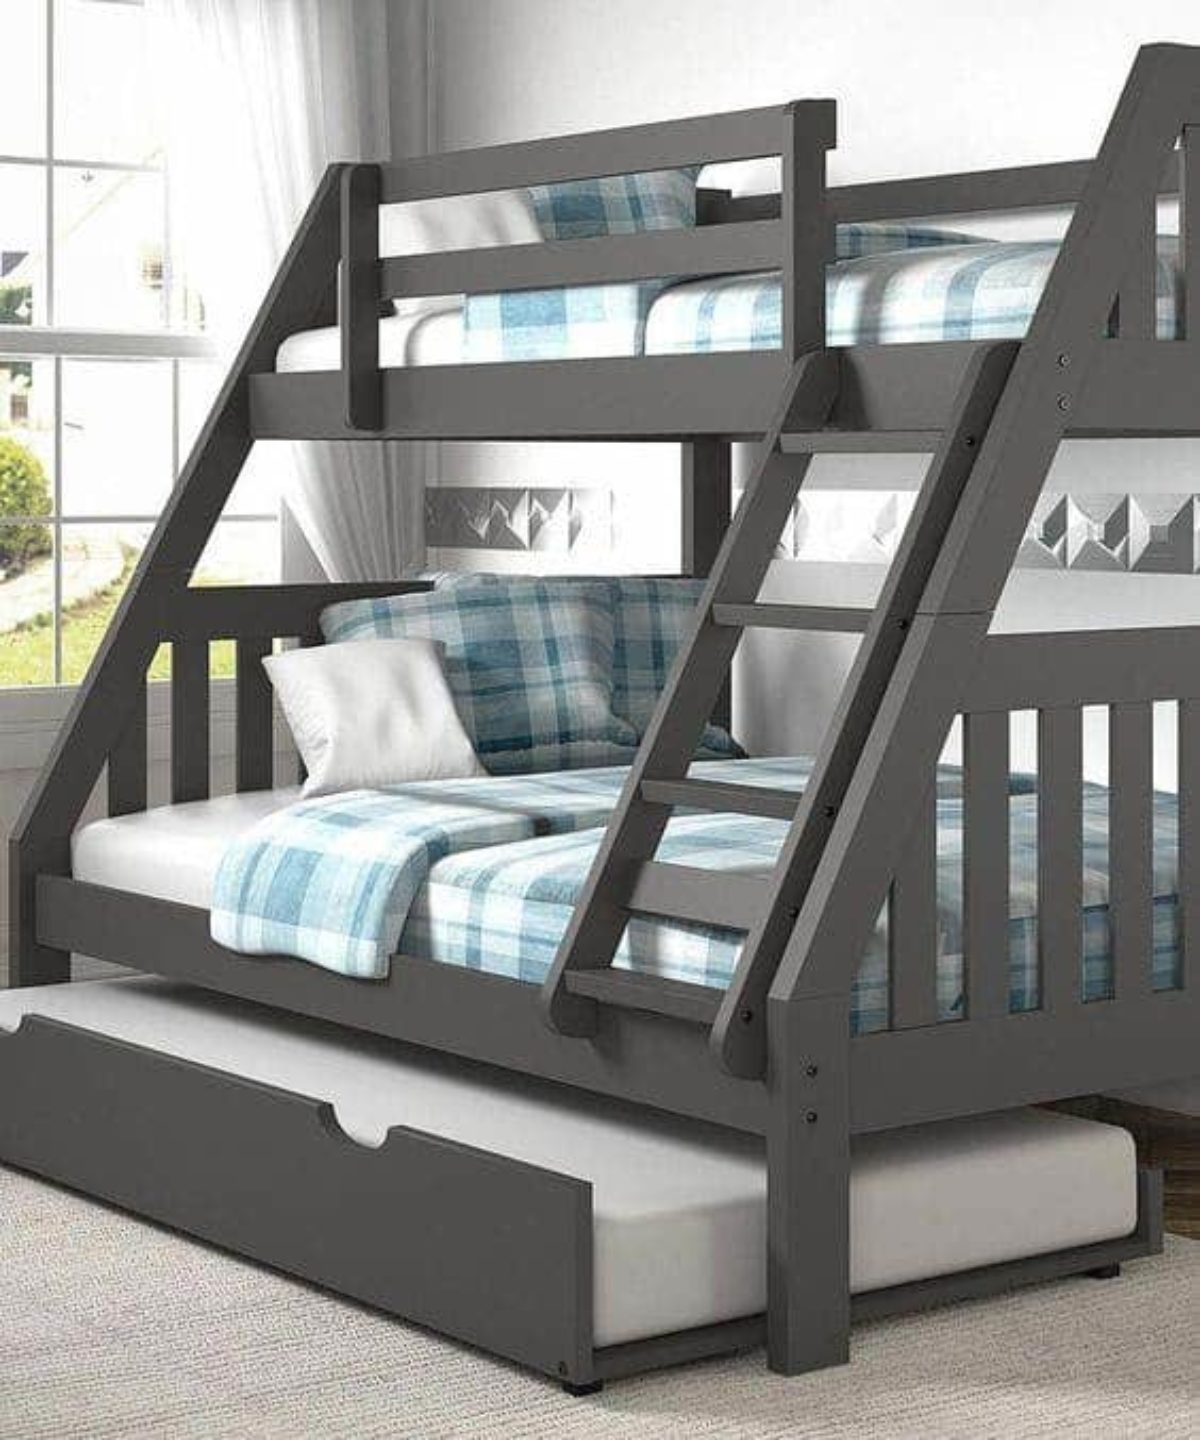 5 Steps To Make A Bunk Bed Ladder Safer, Wood Bunk Bed Ladder Only